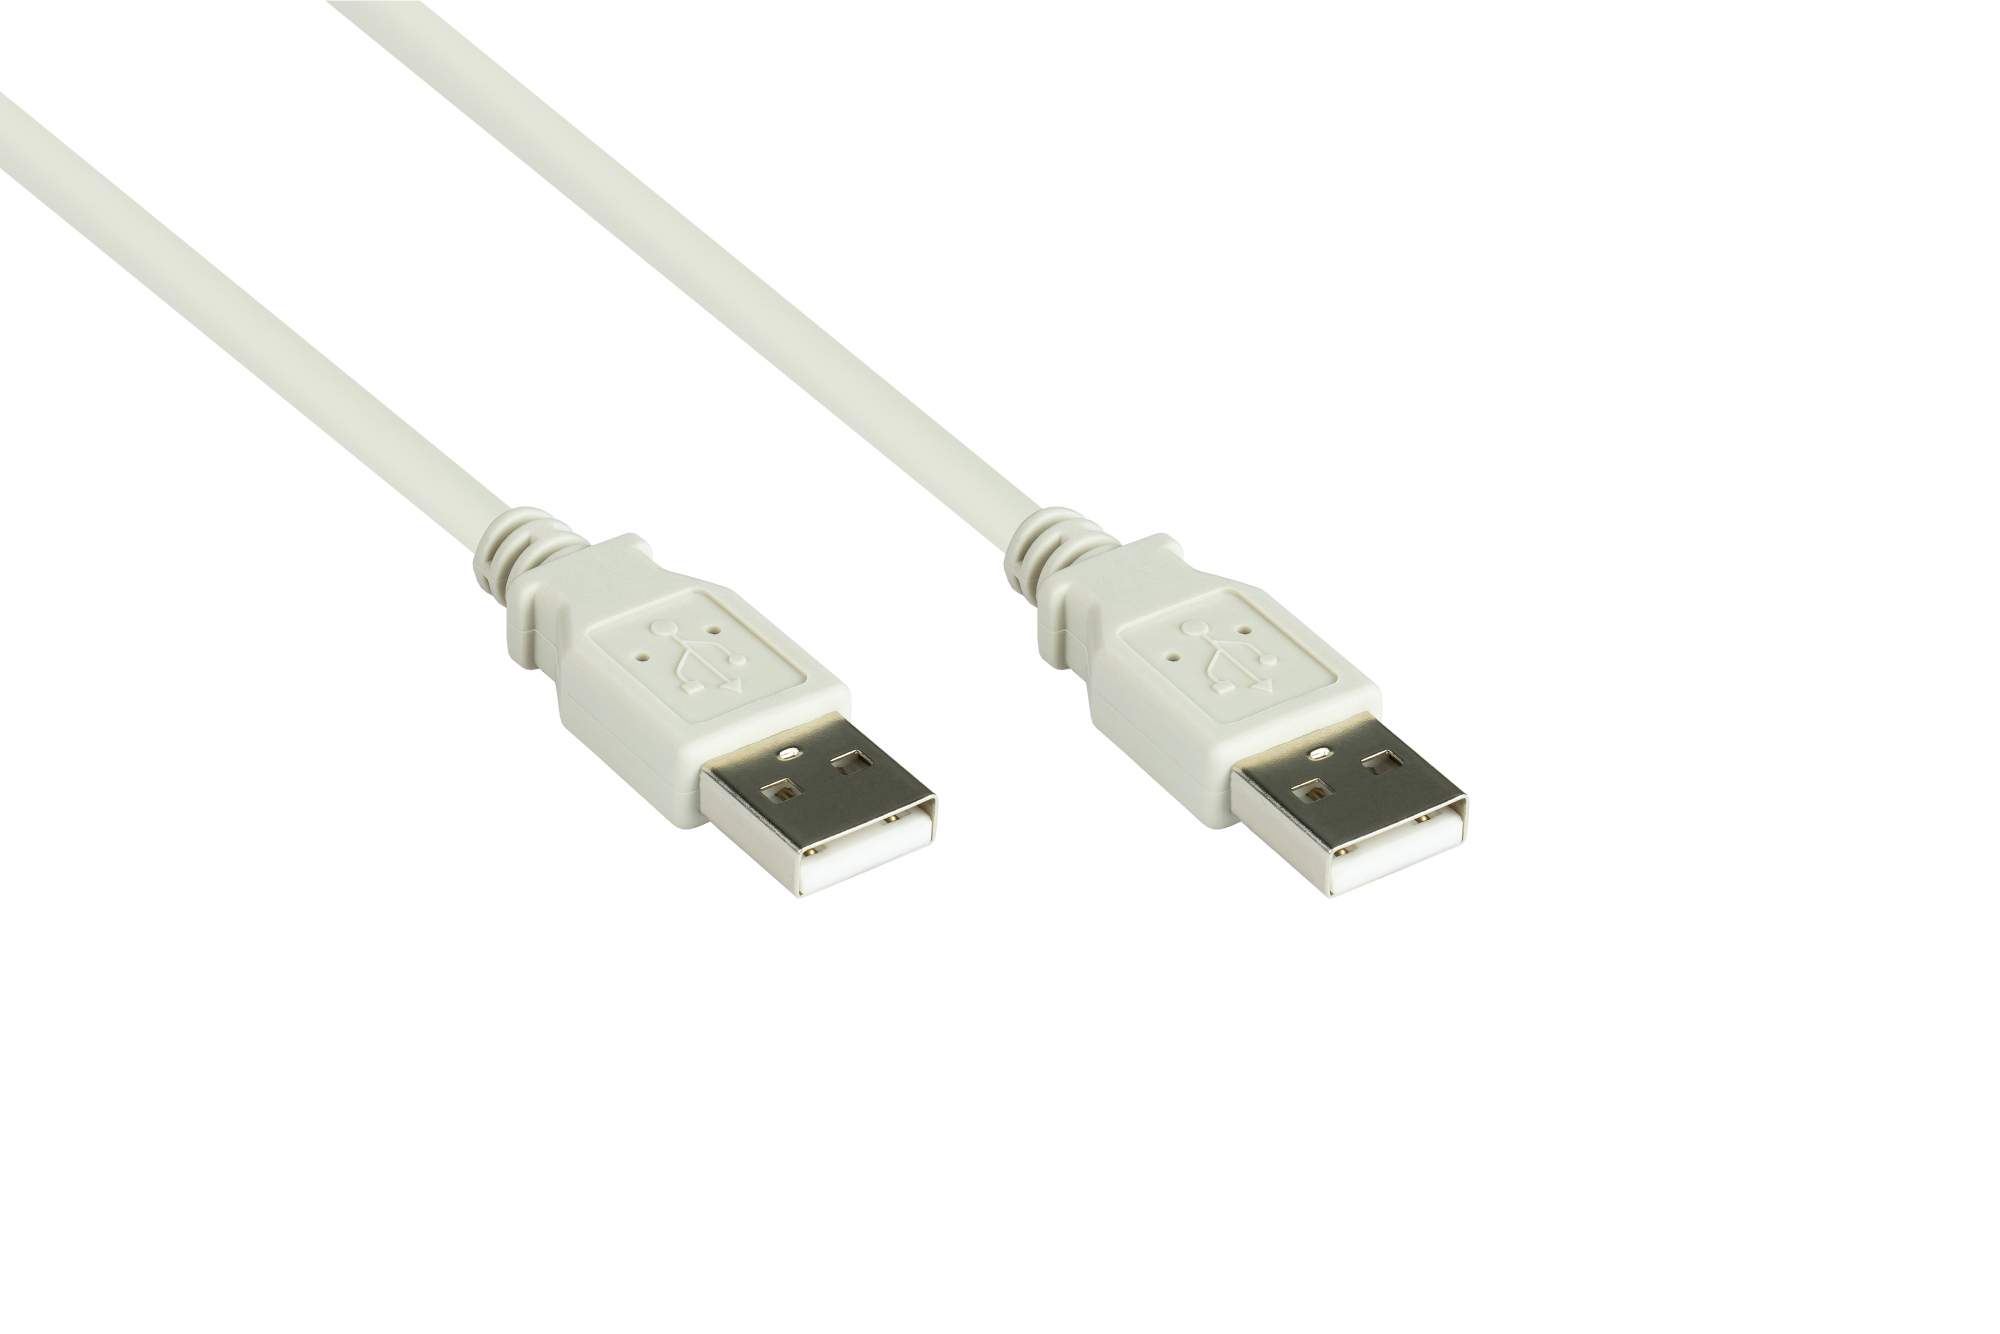 Anschlusskabel USB 2.0 Stecker A an Stecker A, grau, 1m, Good Connections®